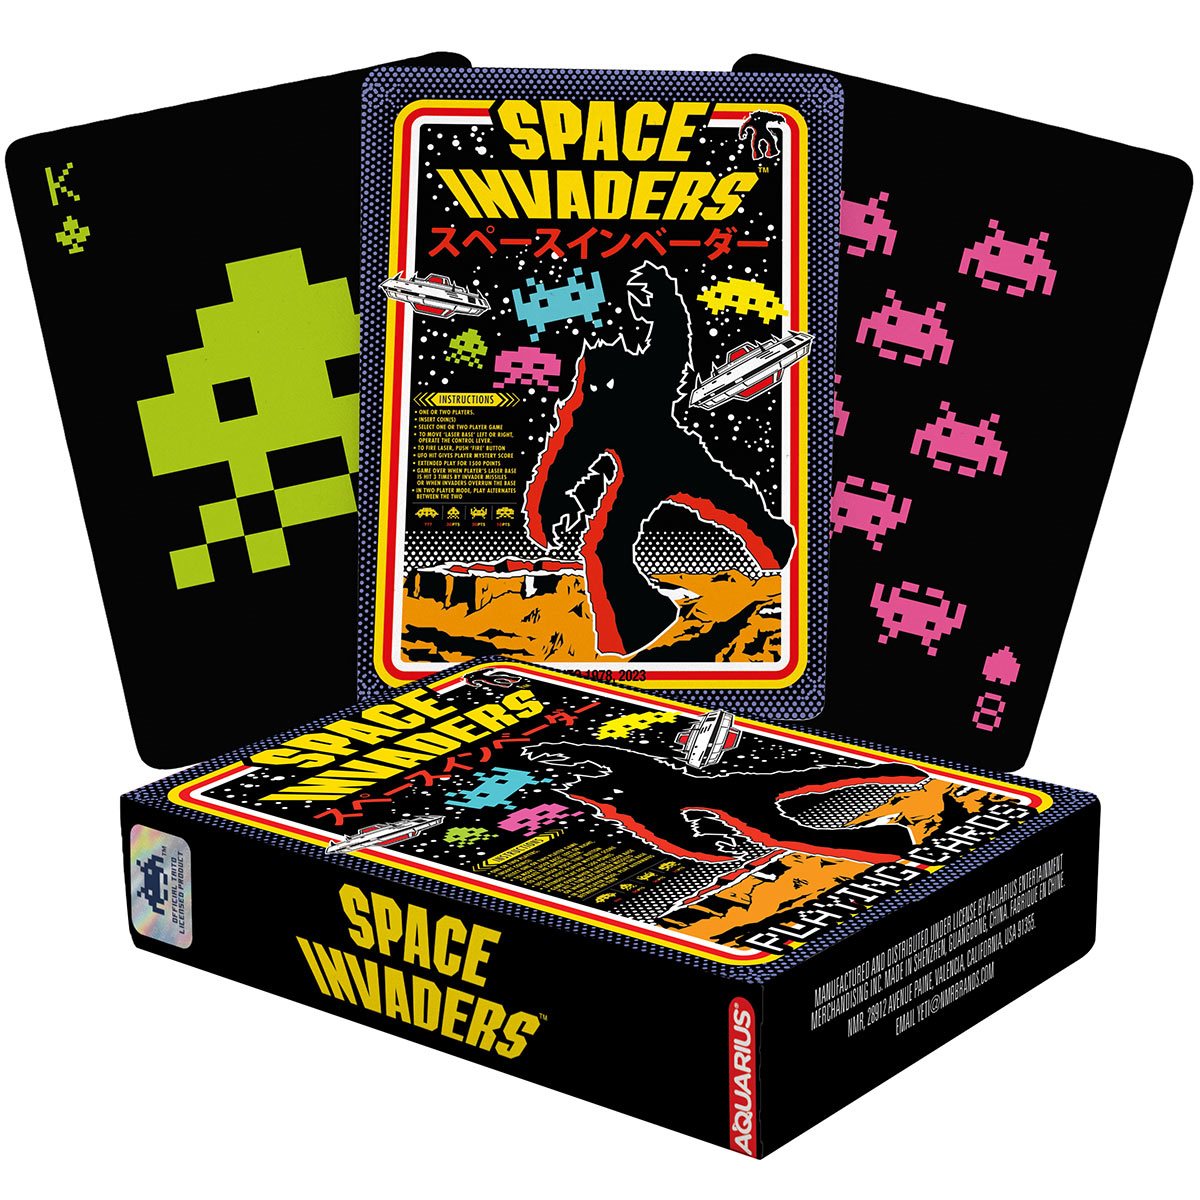 atari 2600 space invaders